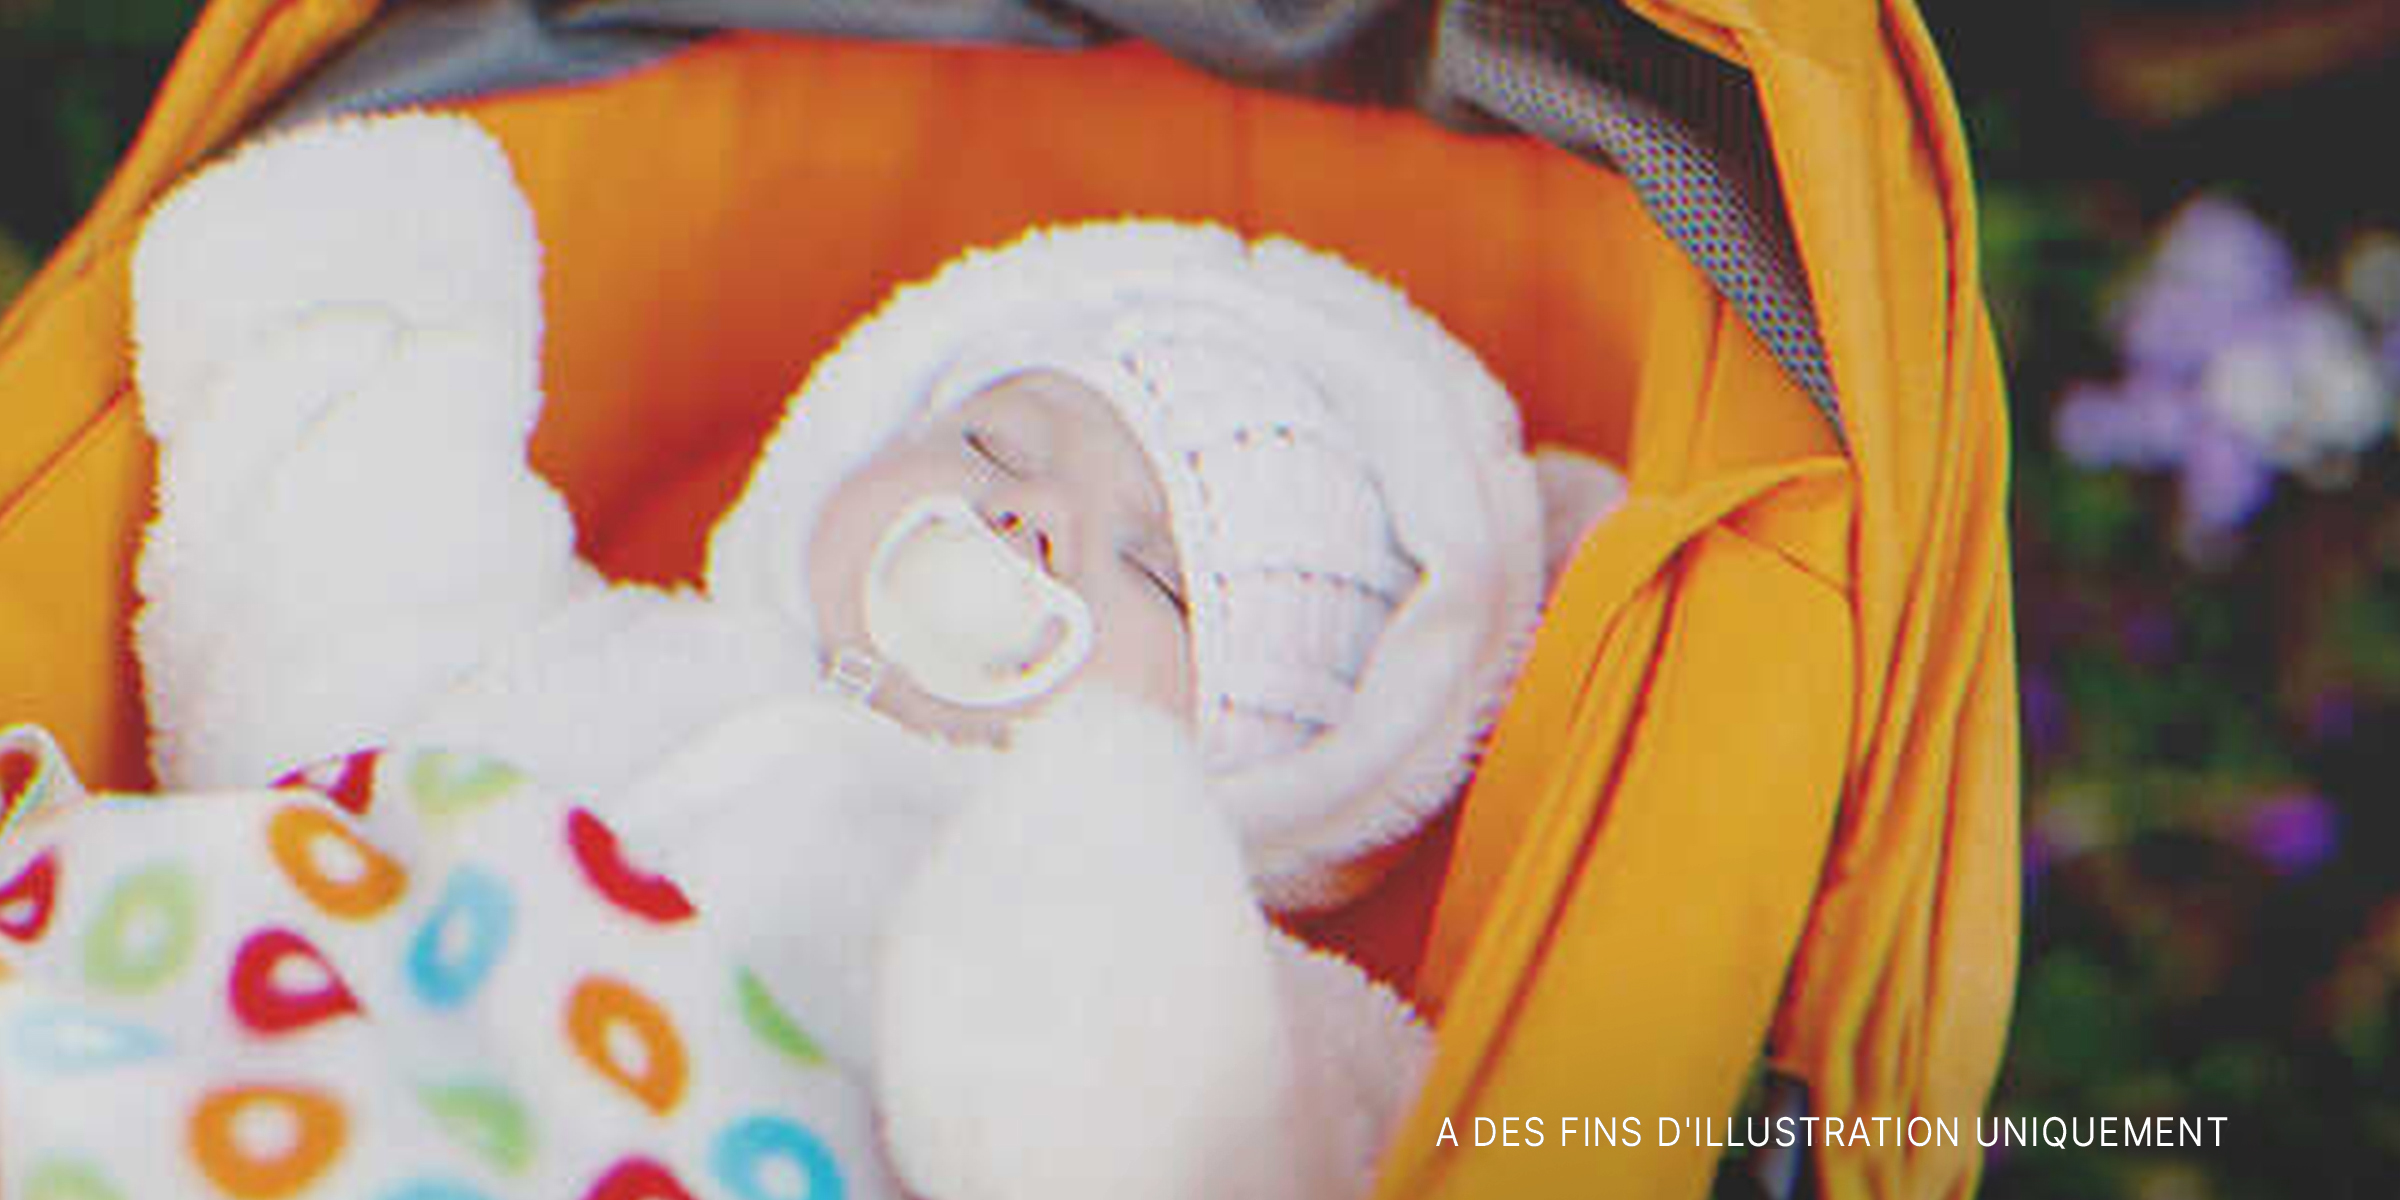 Bébé endormi dans une poussette | Source : Shutterstock